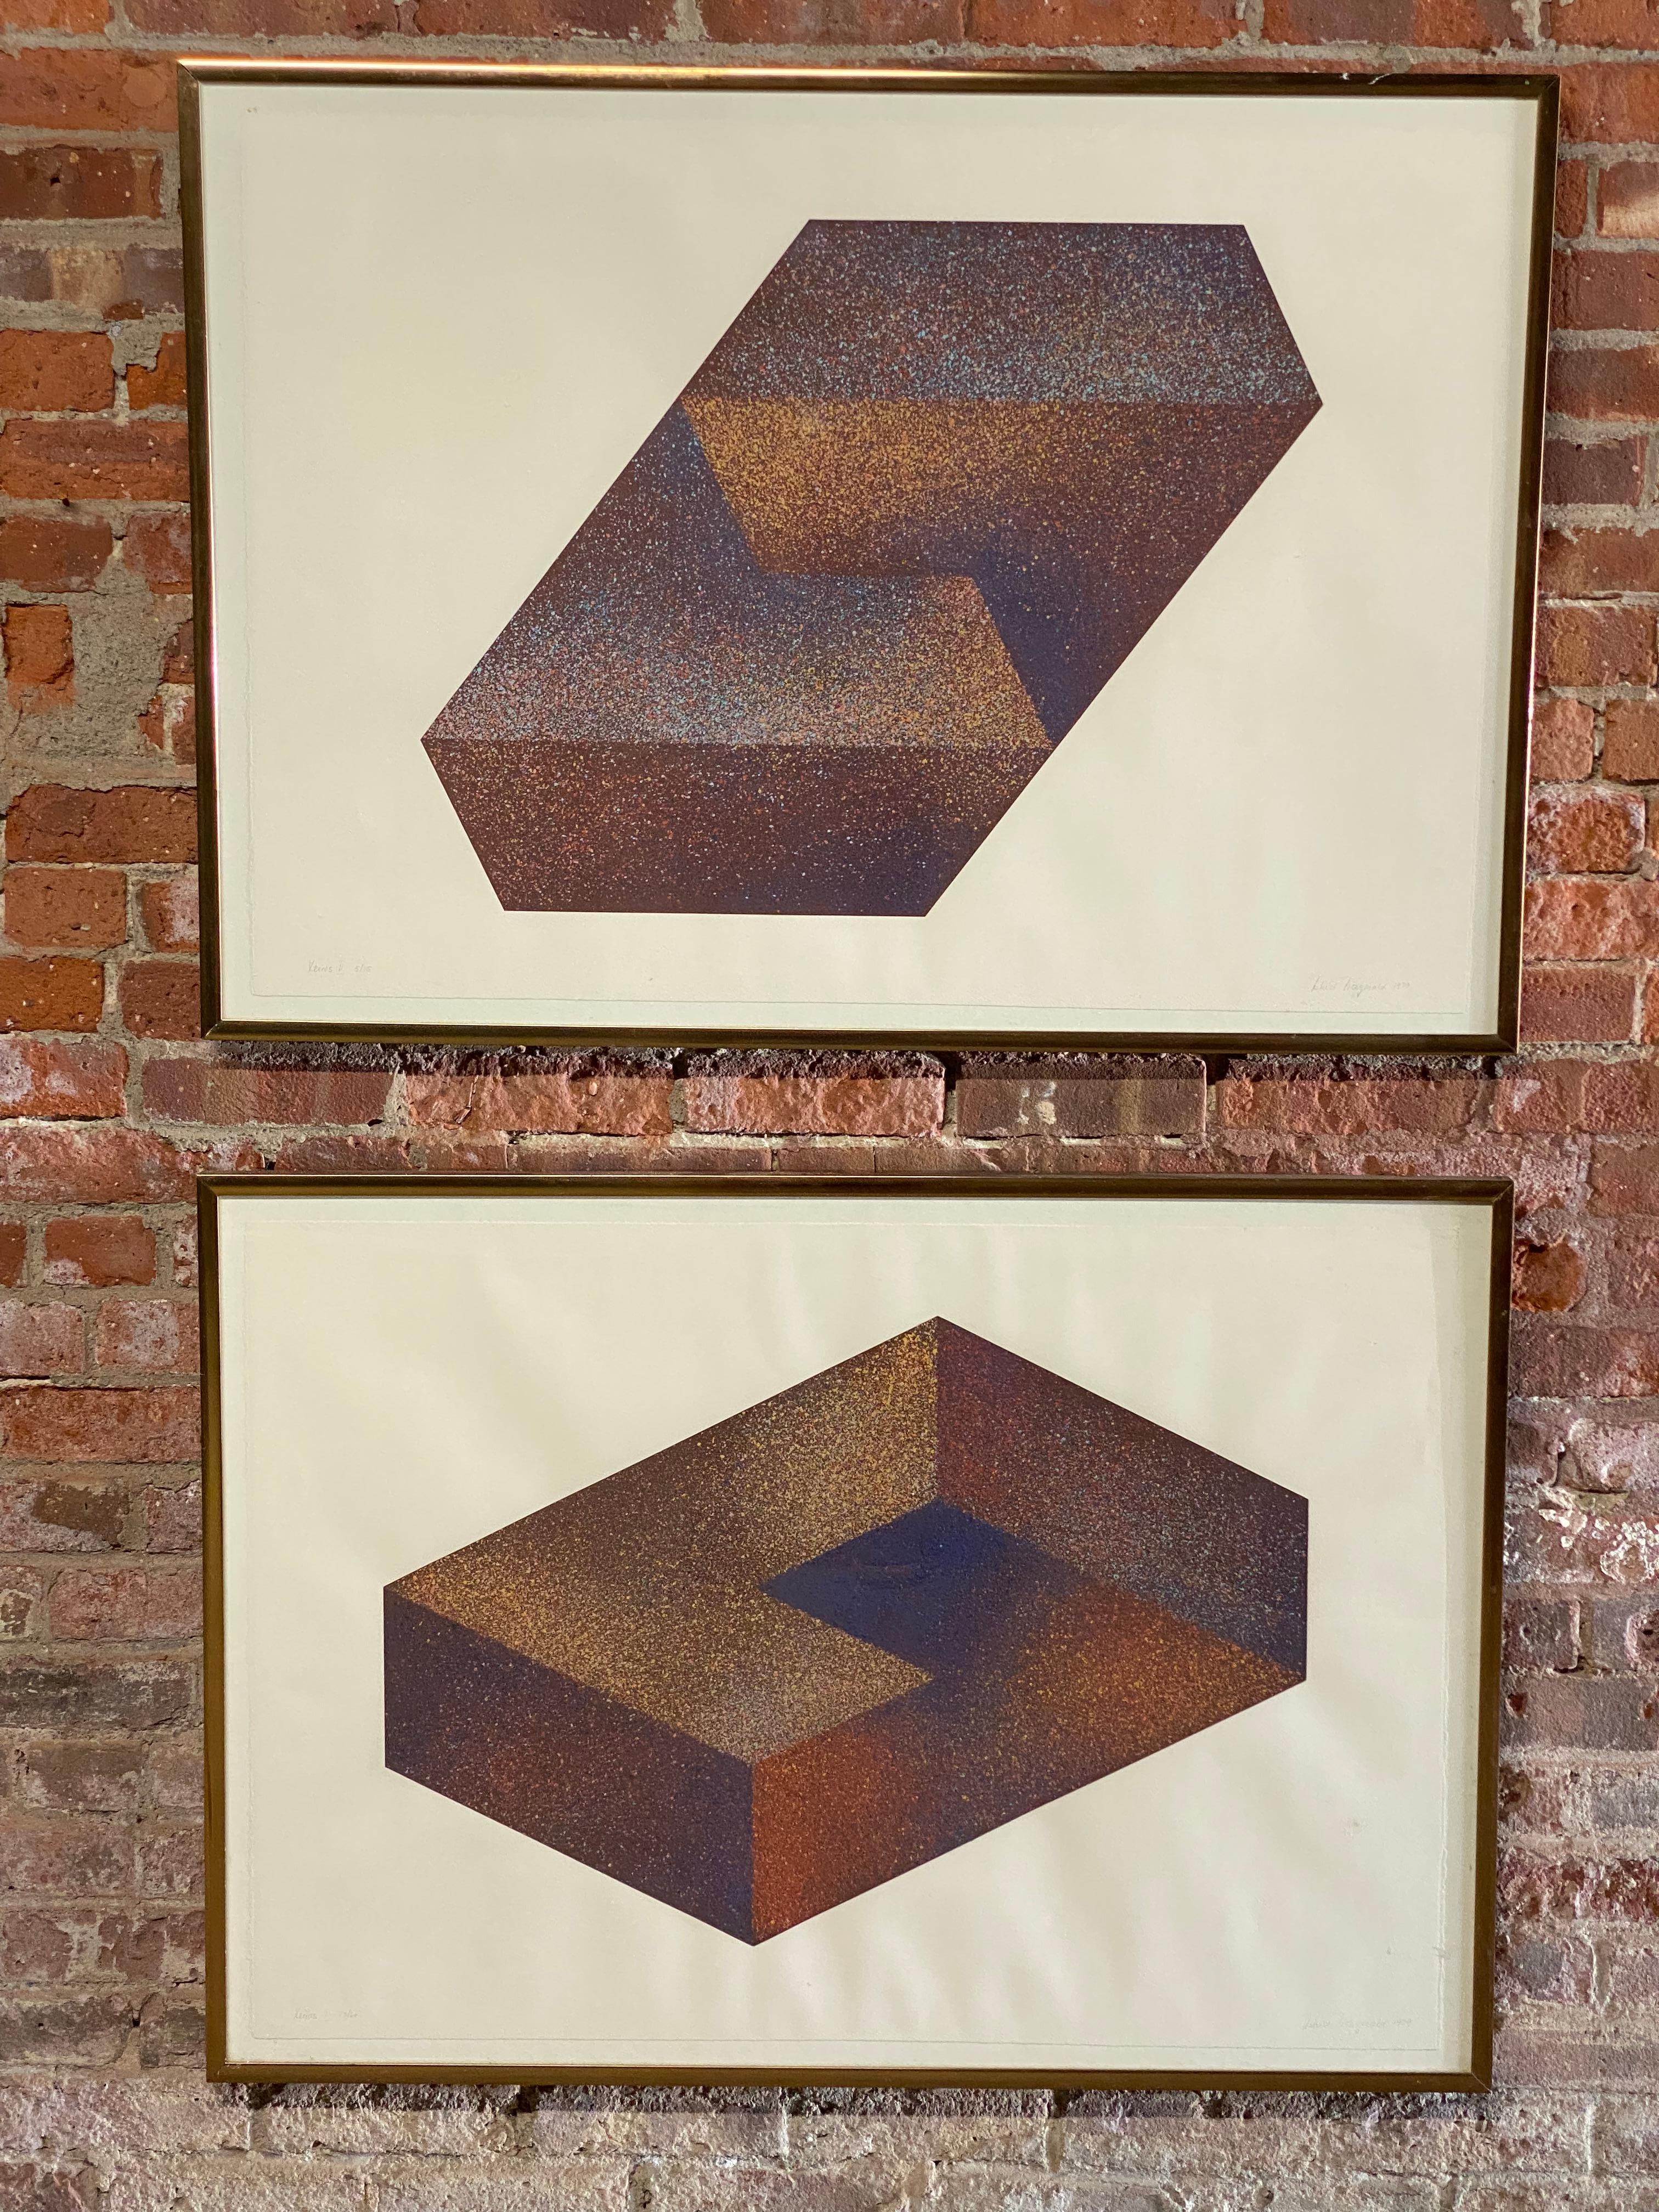 Astrid Fitzgerald, (Née : 1938 - Wil-St. Gallen, Suisse), est connu pour son abstraction géométrique et ses gravures. La paire de sérigraphies est signée, titrée et numérotée au crayon dans la marge inférieure, Astrid Fitzgerald, Xenos I et V, 1979.